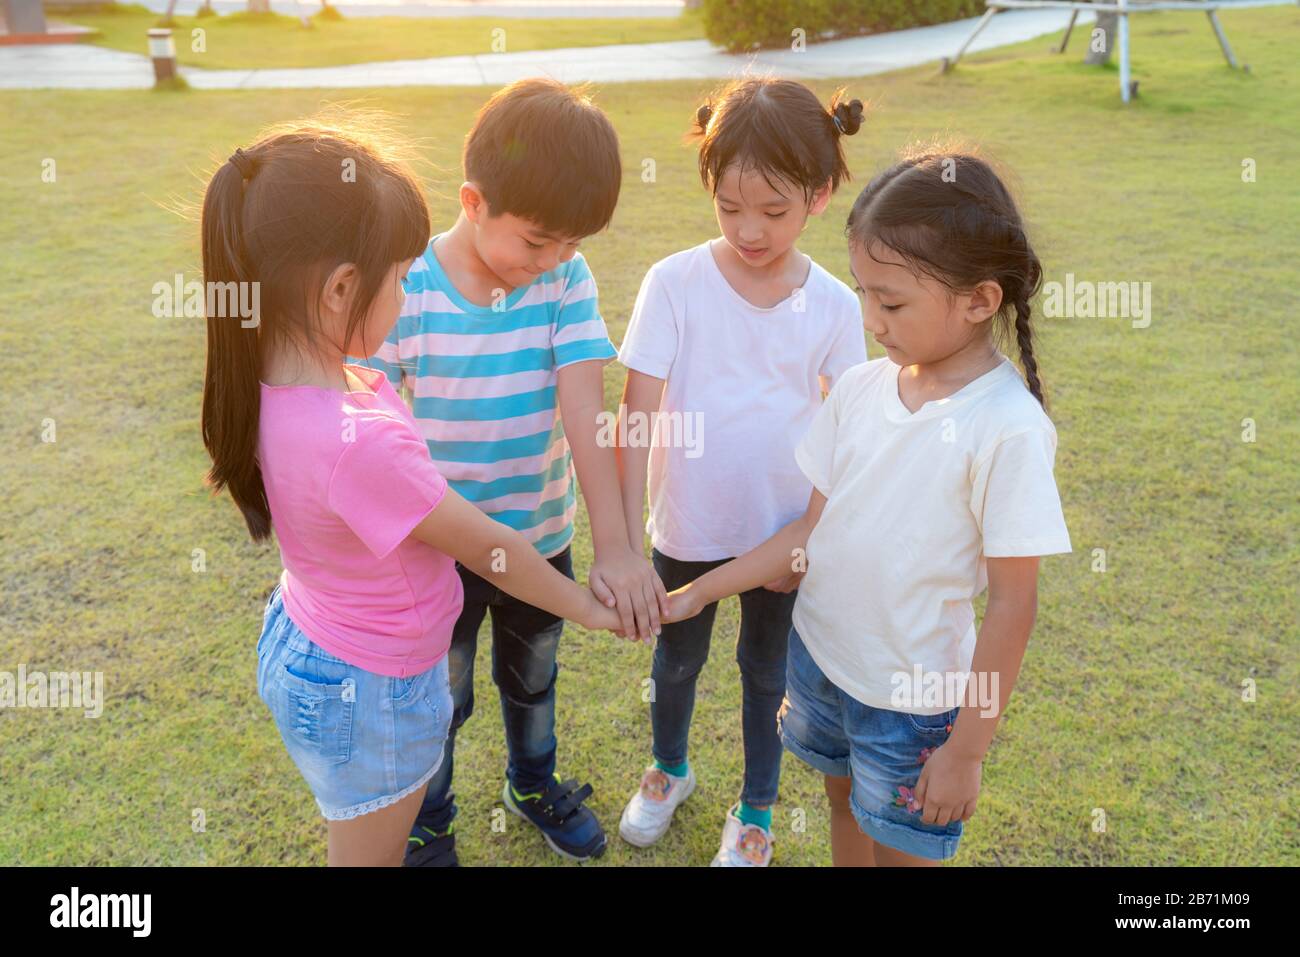 Gruppe glücklicher asiatischer Kleinkinder stapeln oder stapeln sich im Sommer auf dem Stadtparkplatz mit den Händen. Kinder- und Erholungskonzept. Stockfoto